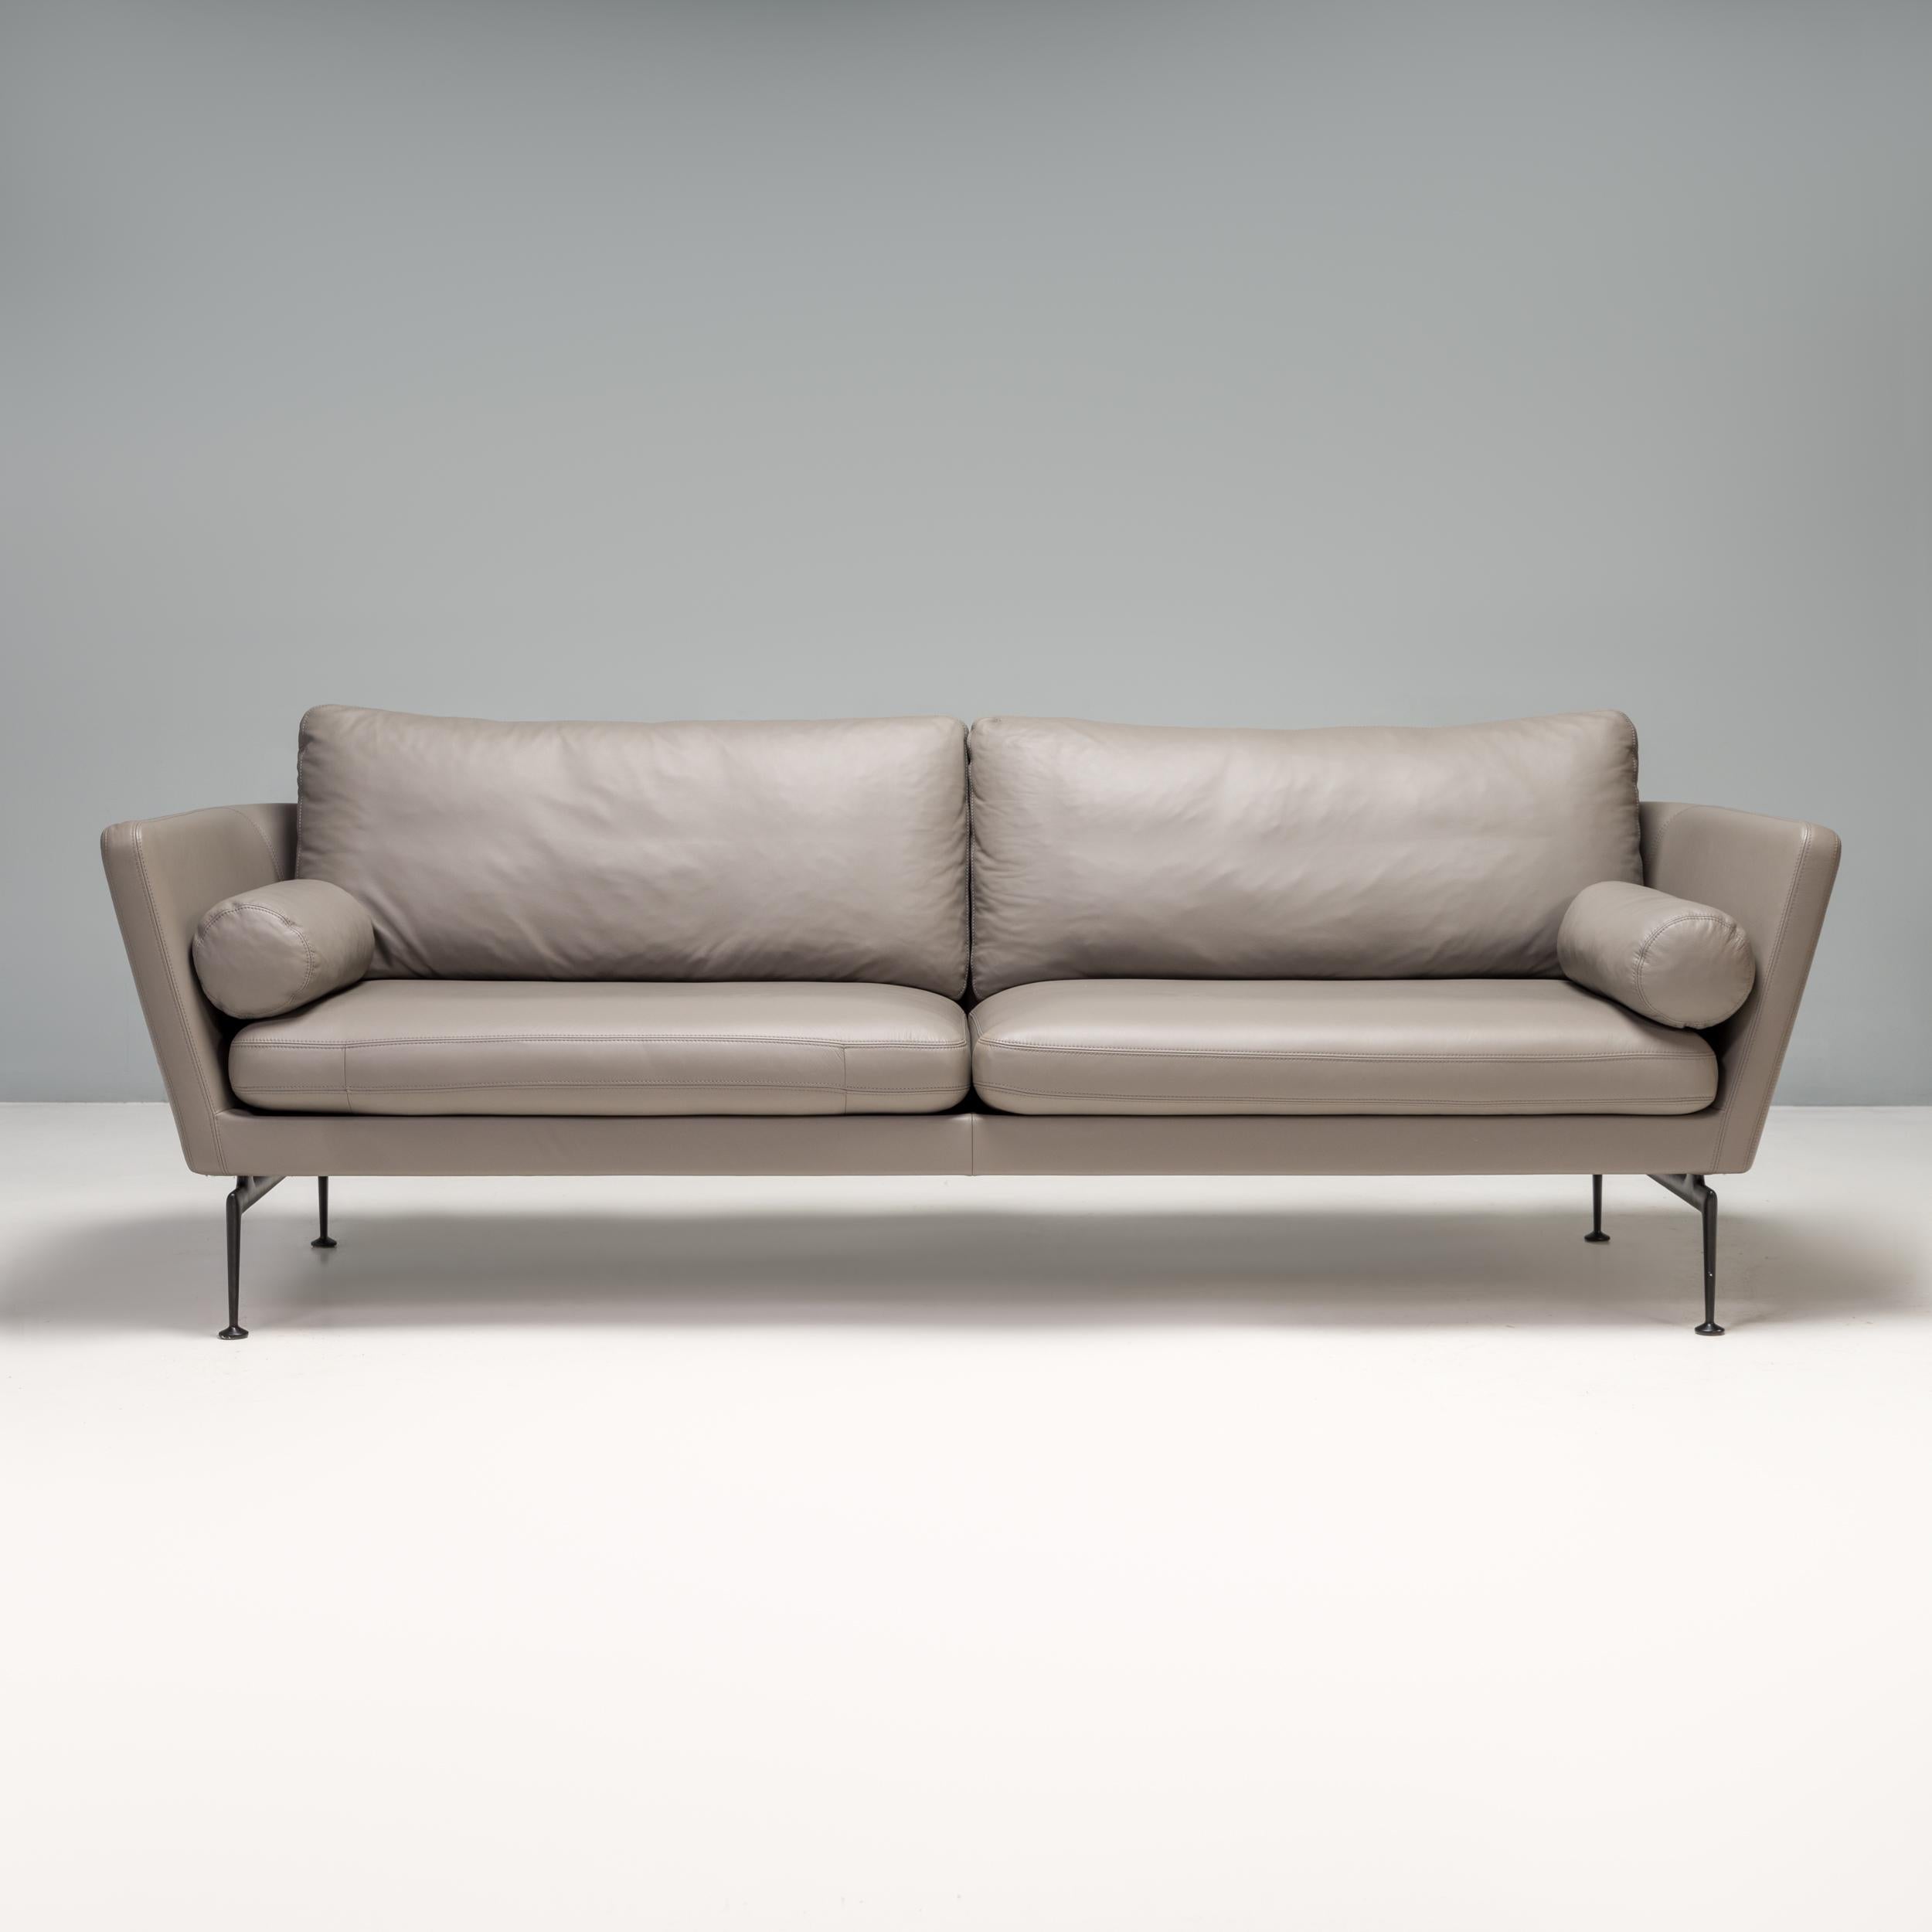 Das 2010 von Antonio Citterio für Vitra entworfene Sofa suita ist ein fantastisches Beispiel für modernes Design.

Das Sofa hat ein schlankes Gestell im Smoking-Stil mit integrierten Armlehnen und ist vollständig mit grauem Leder